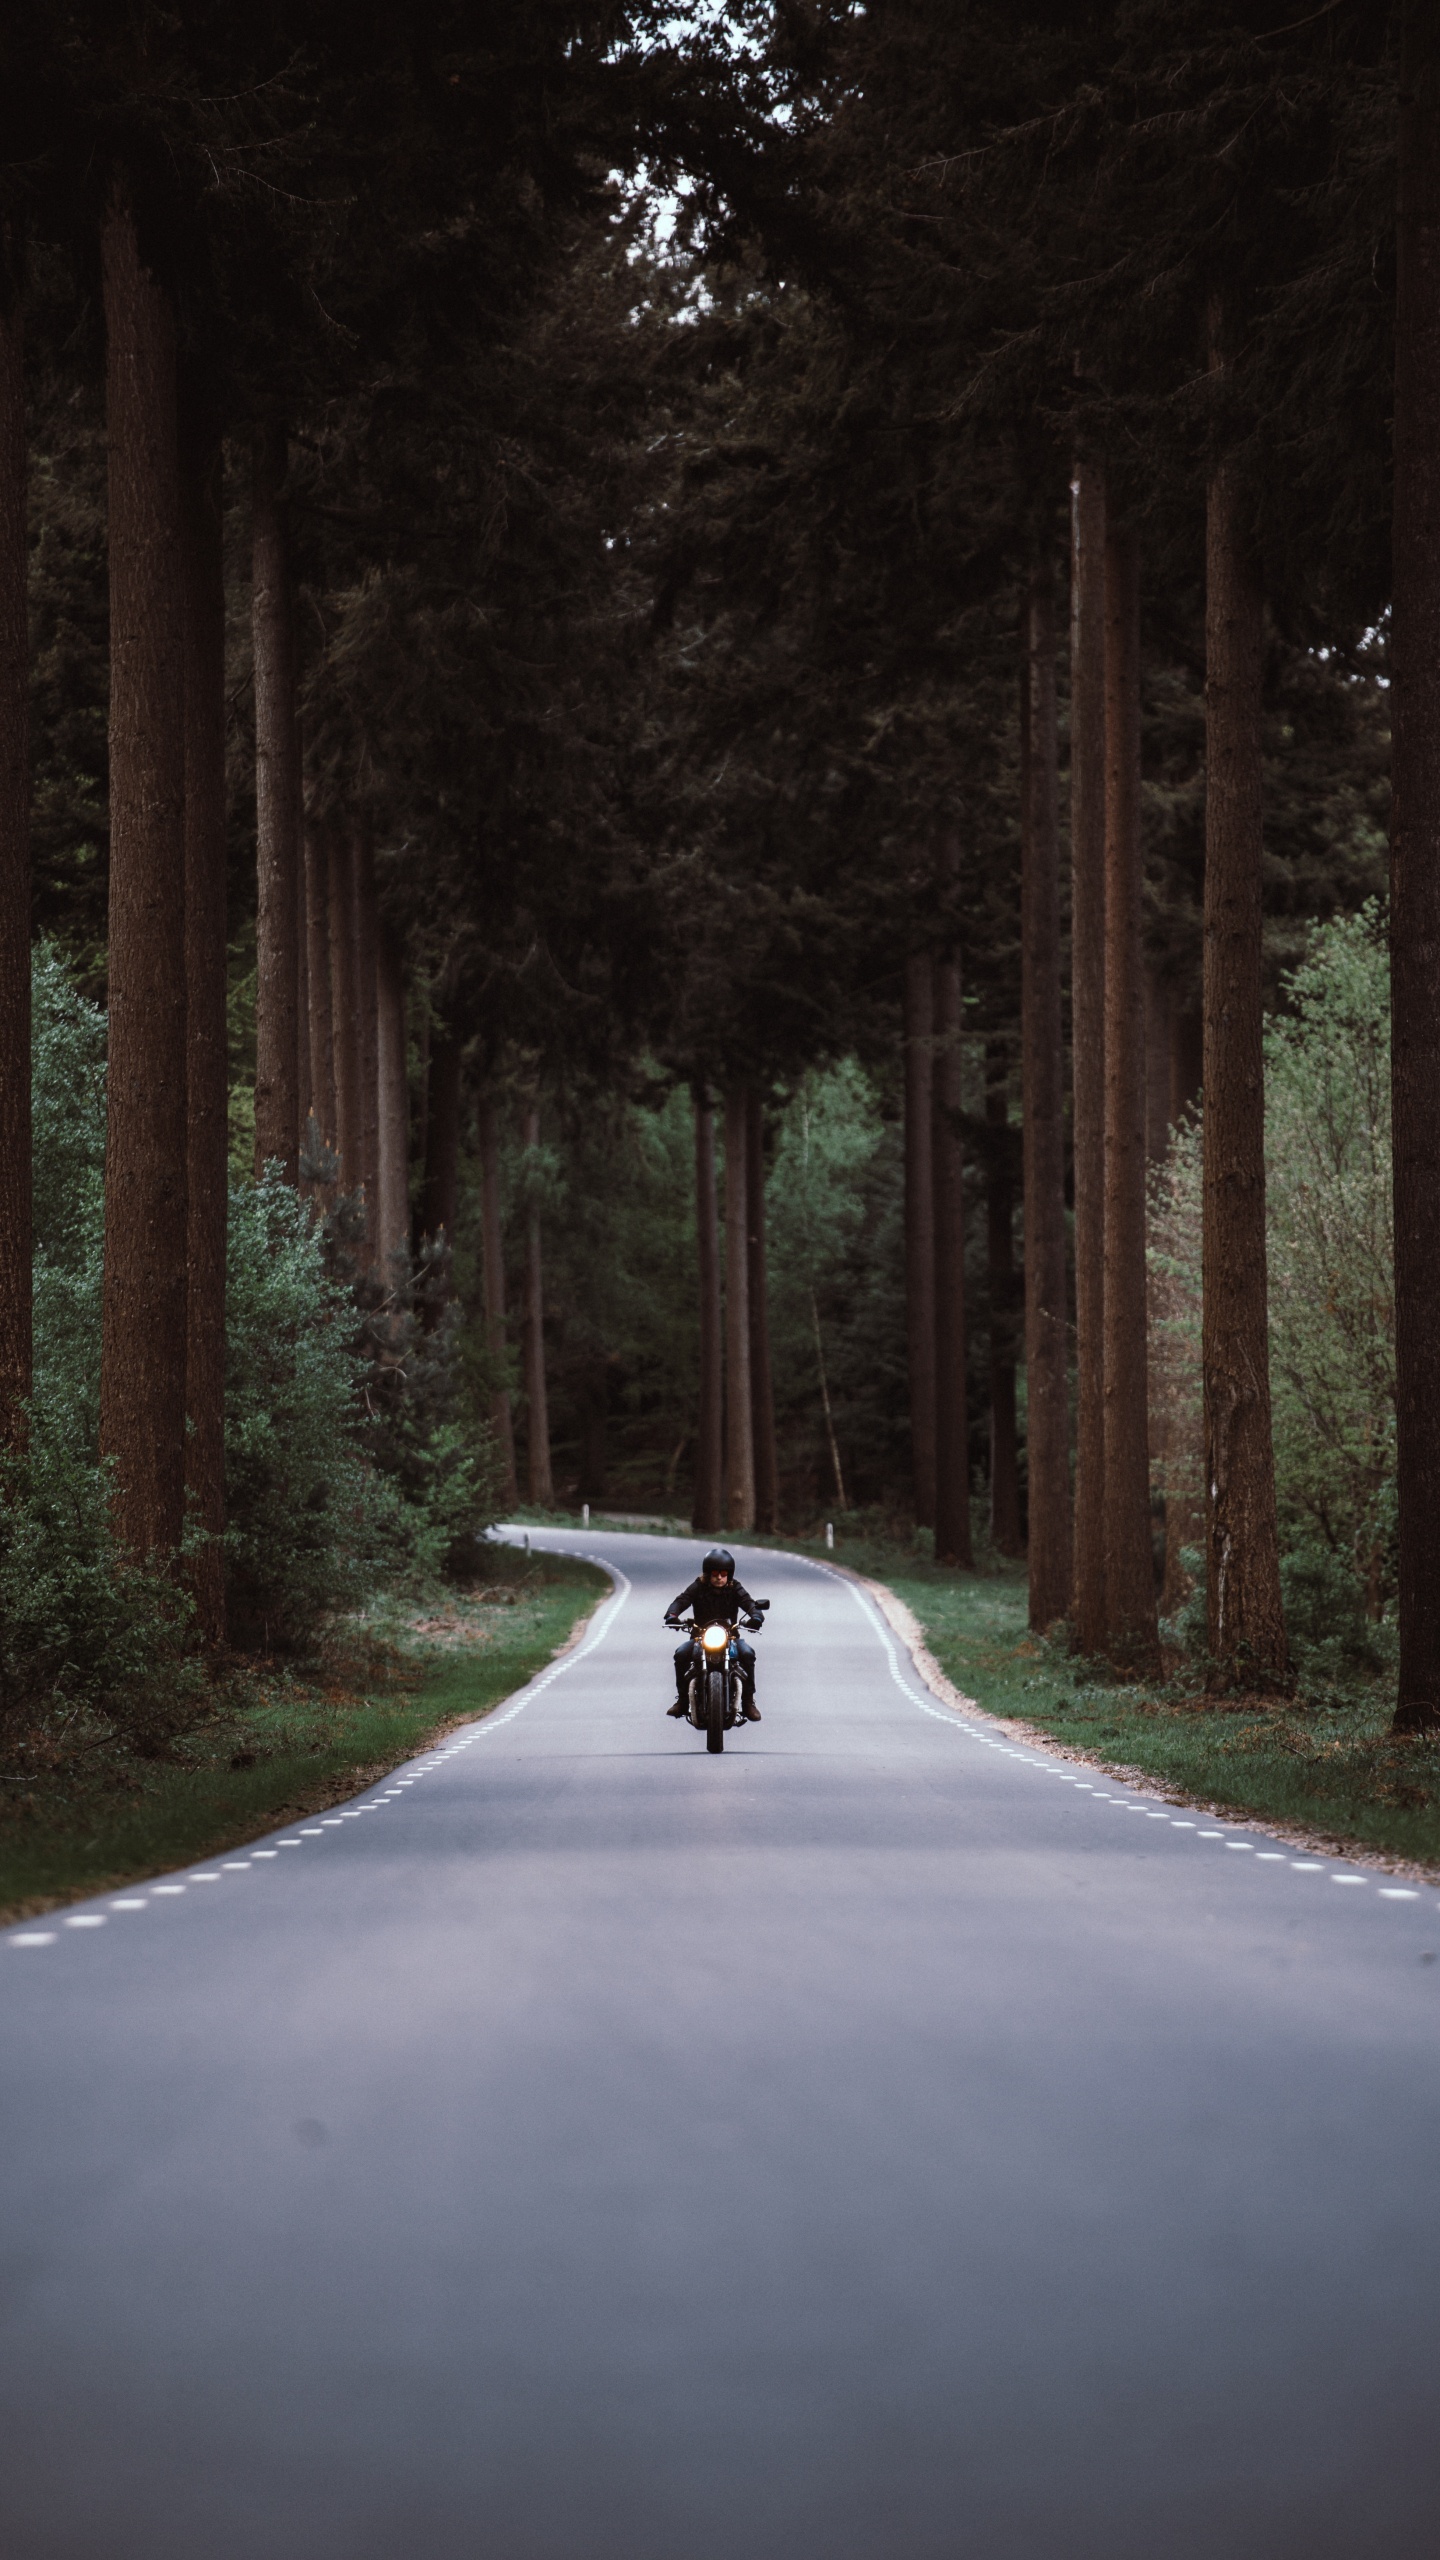 Persona en Motocicleta en la Carretera Entre Árboles Durante el Día. Wallpaper in 1440x2560 Resolution